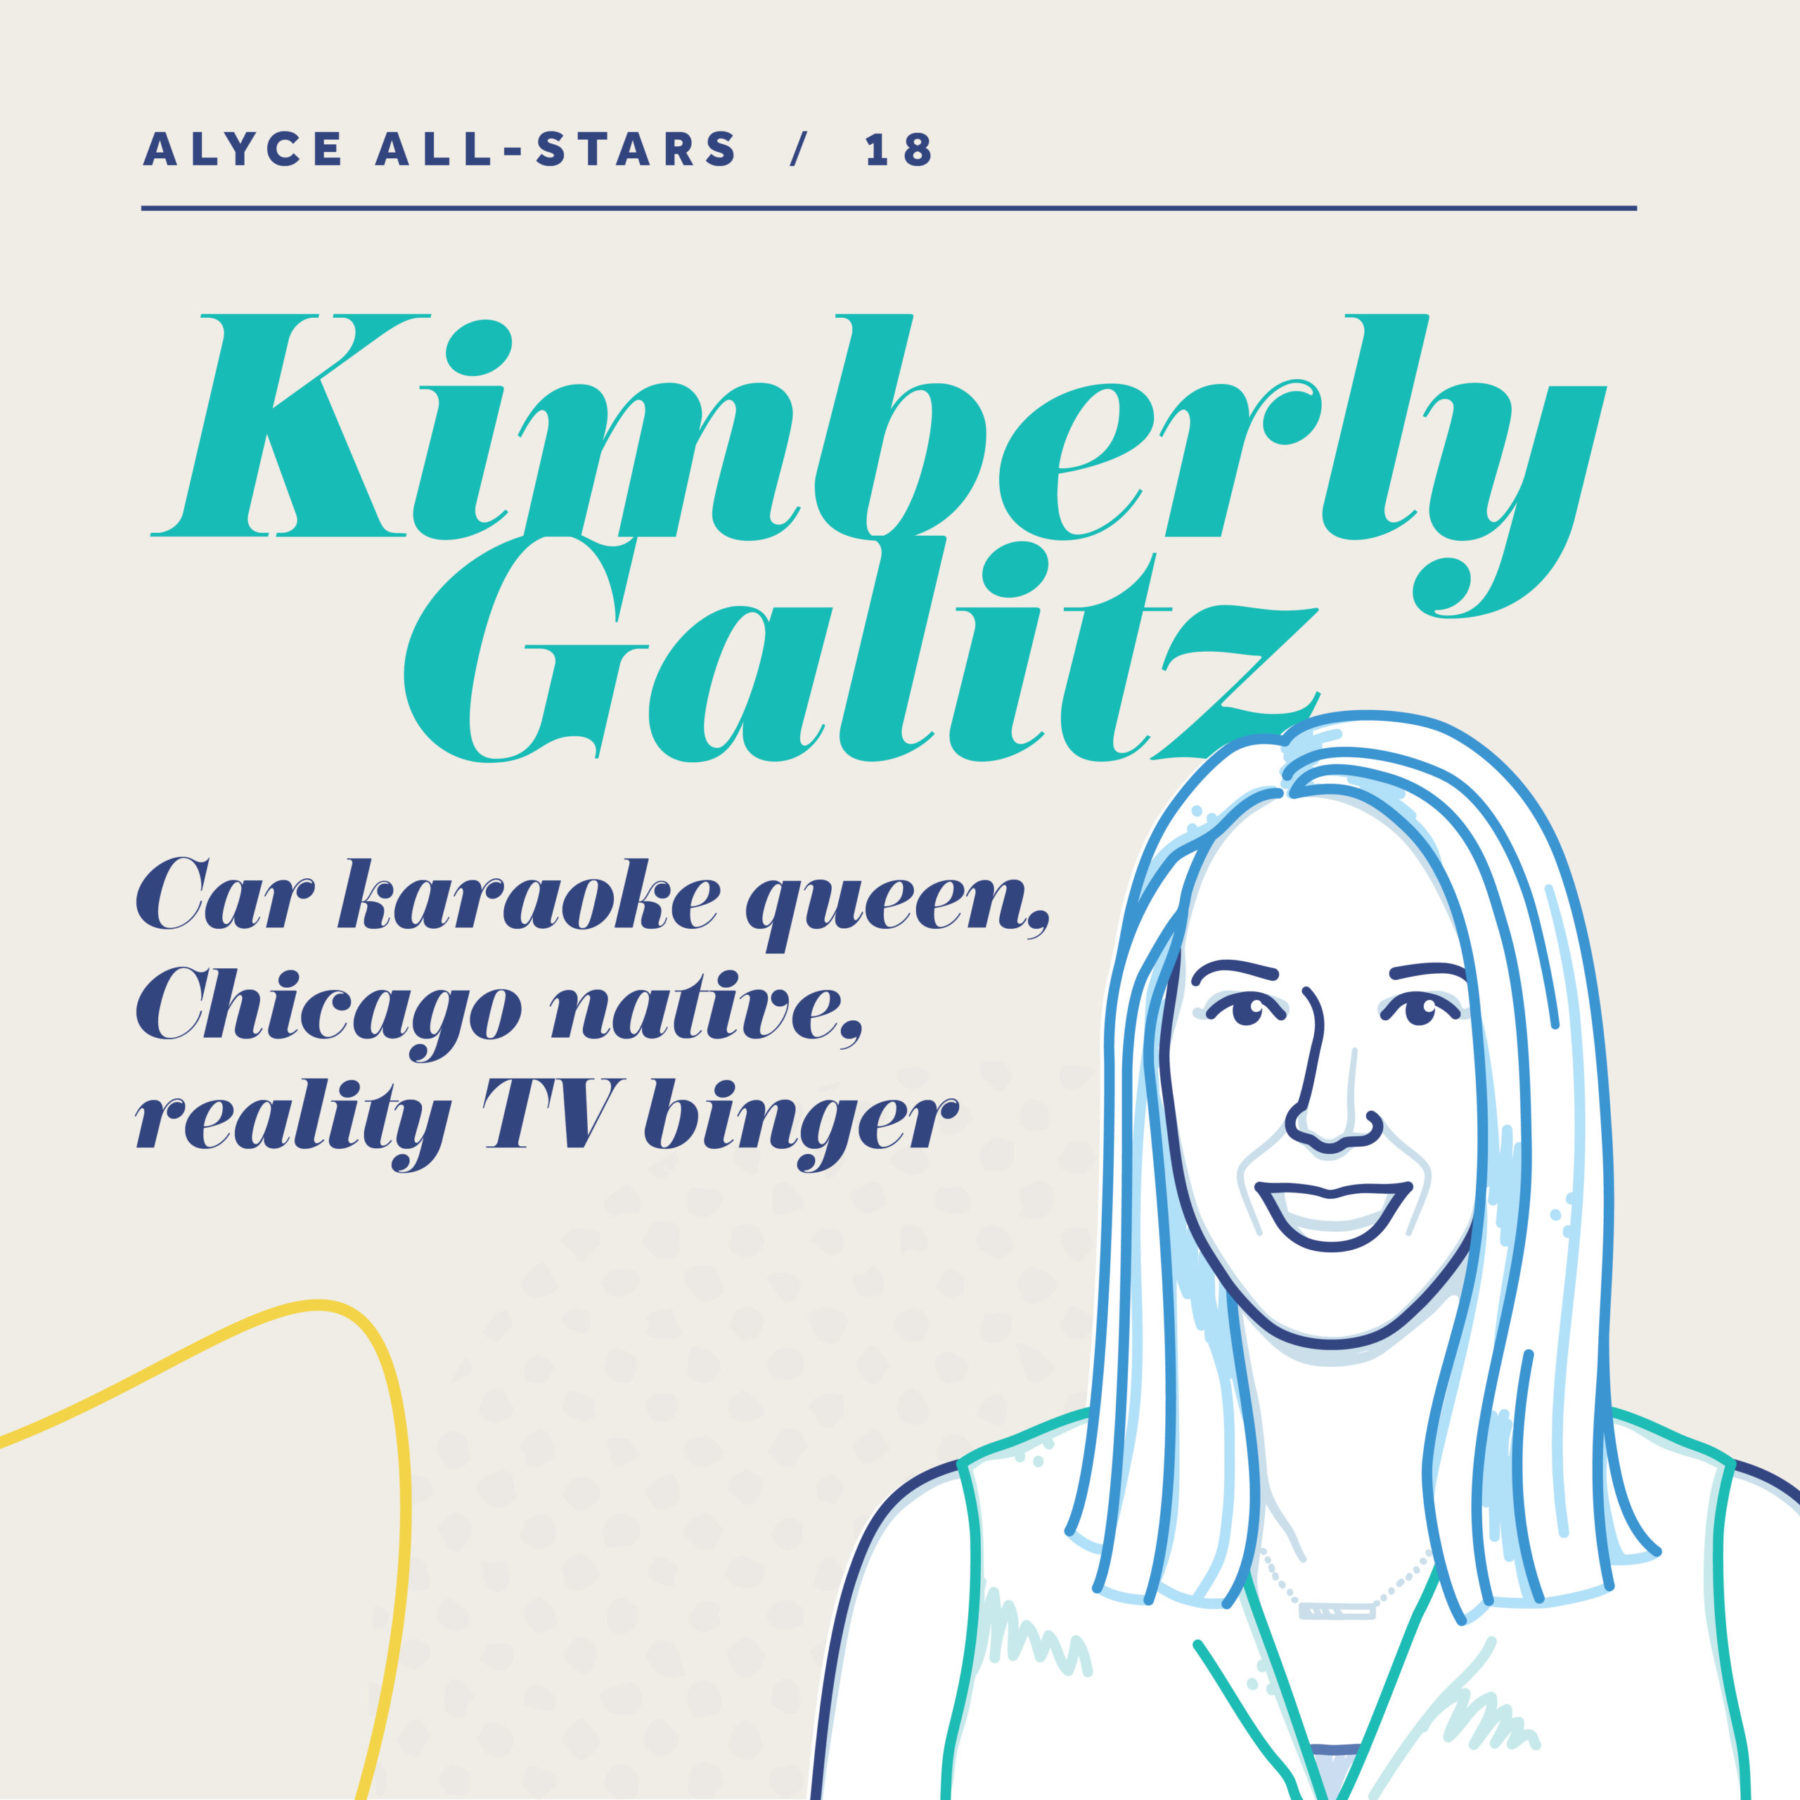 Meet Kimberly Galitz